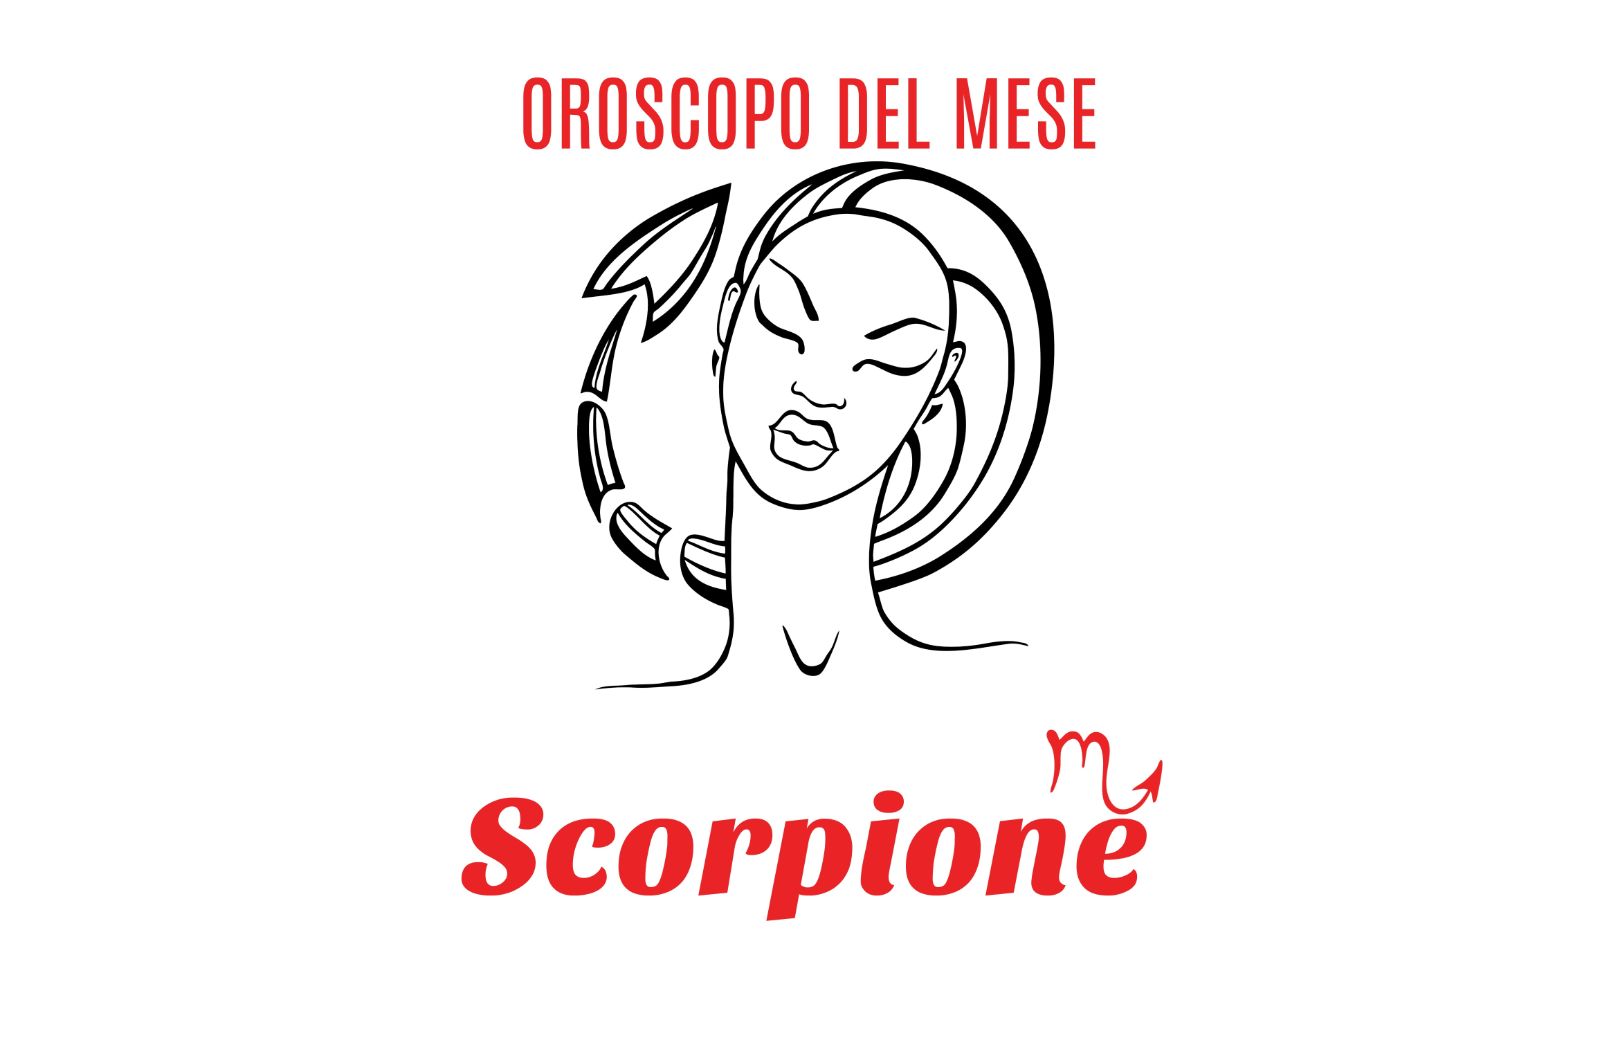 Oroscopo del mese: Scorpione - ottobre 2018